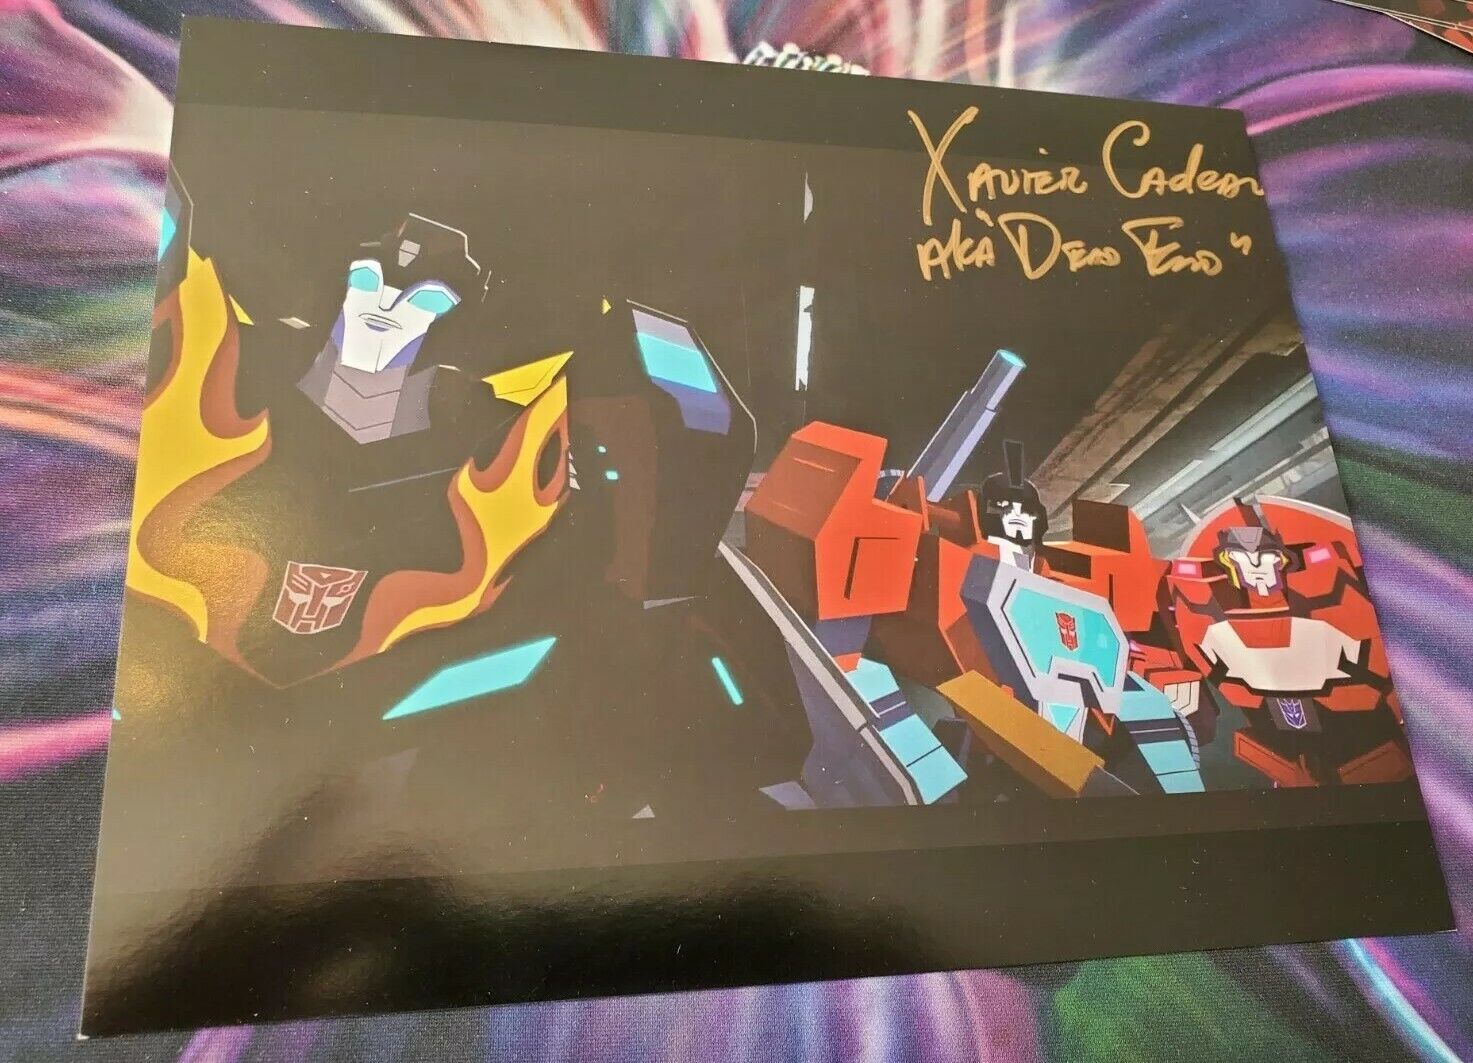 Xavier Paul Cadeau Hand Signed Autograph Photo Transformers Dead End signature 